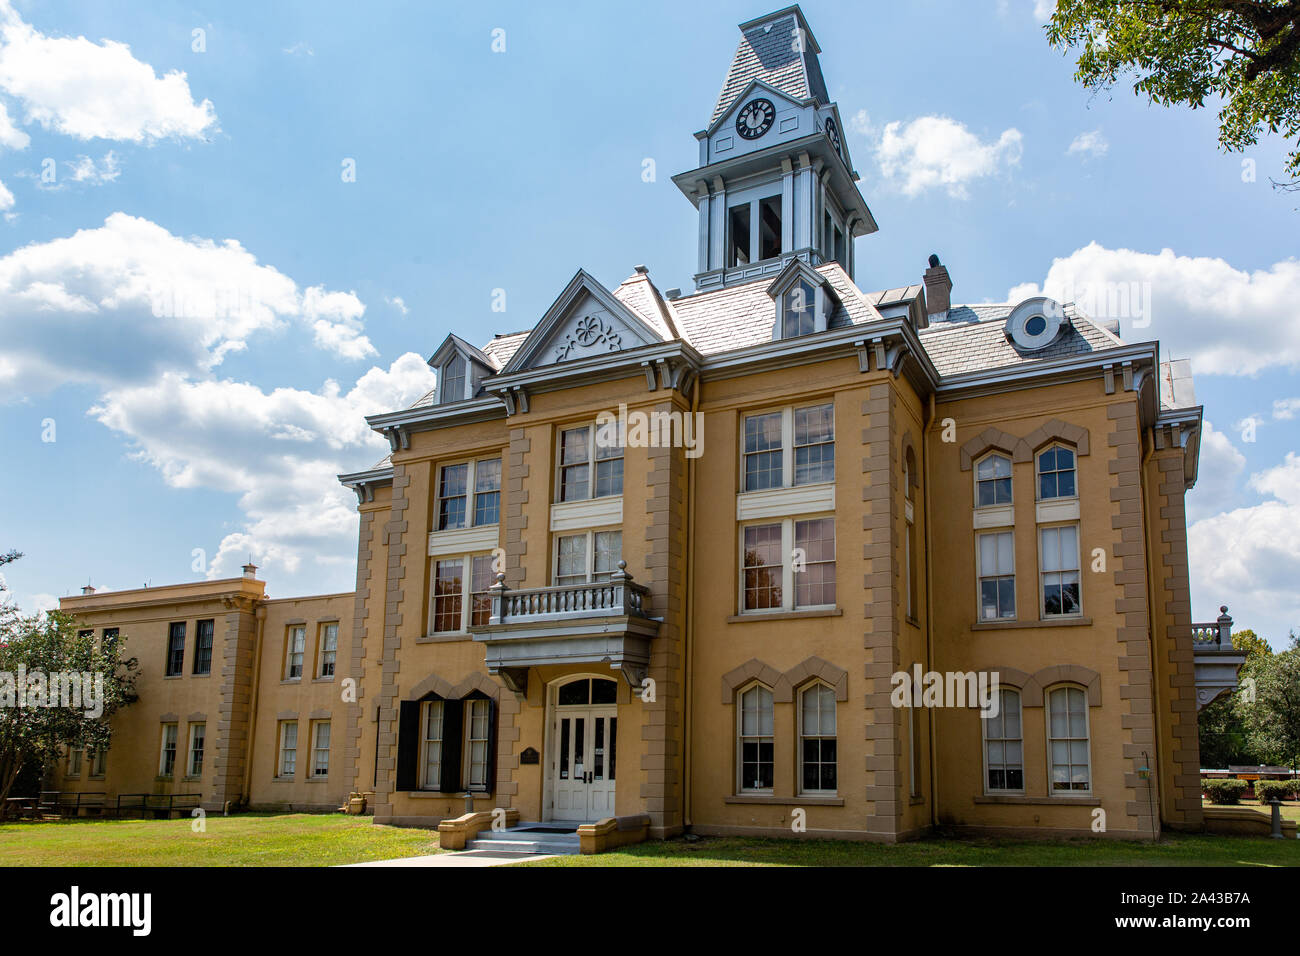 The Historic 1903 Newton County Courthouse in Newton, Texas Stock Photo